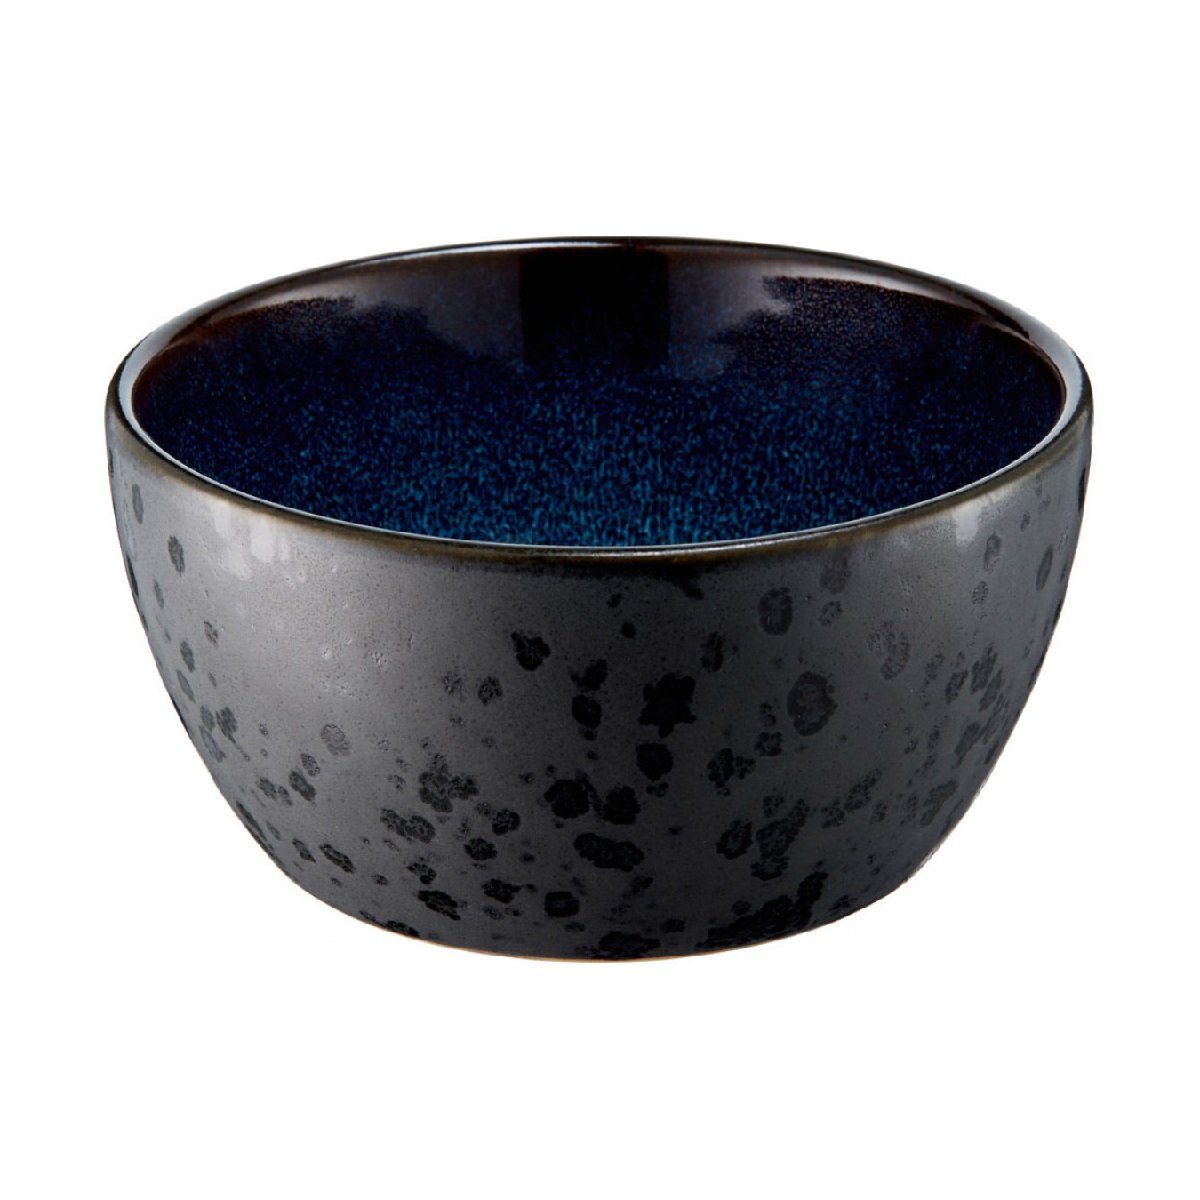 Bitz Schüssel Gastro black / dark blue, Steinzeug, d: 12 cm / h: 6 cm schwarz/dunkelblau